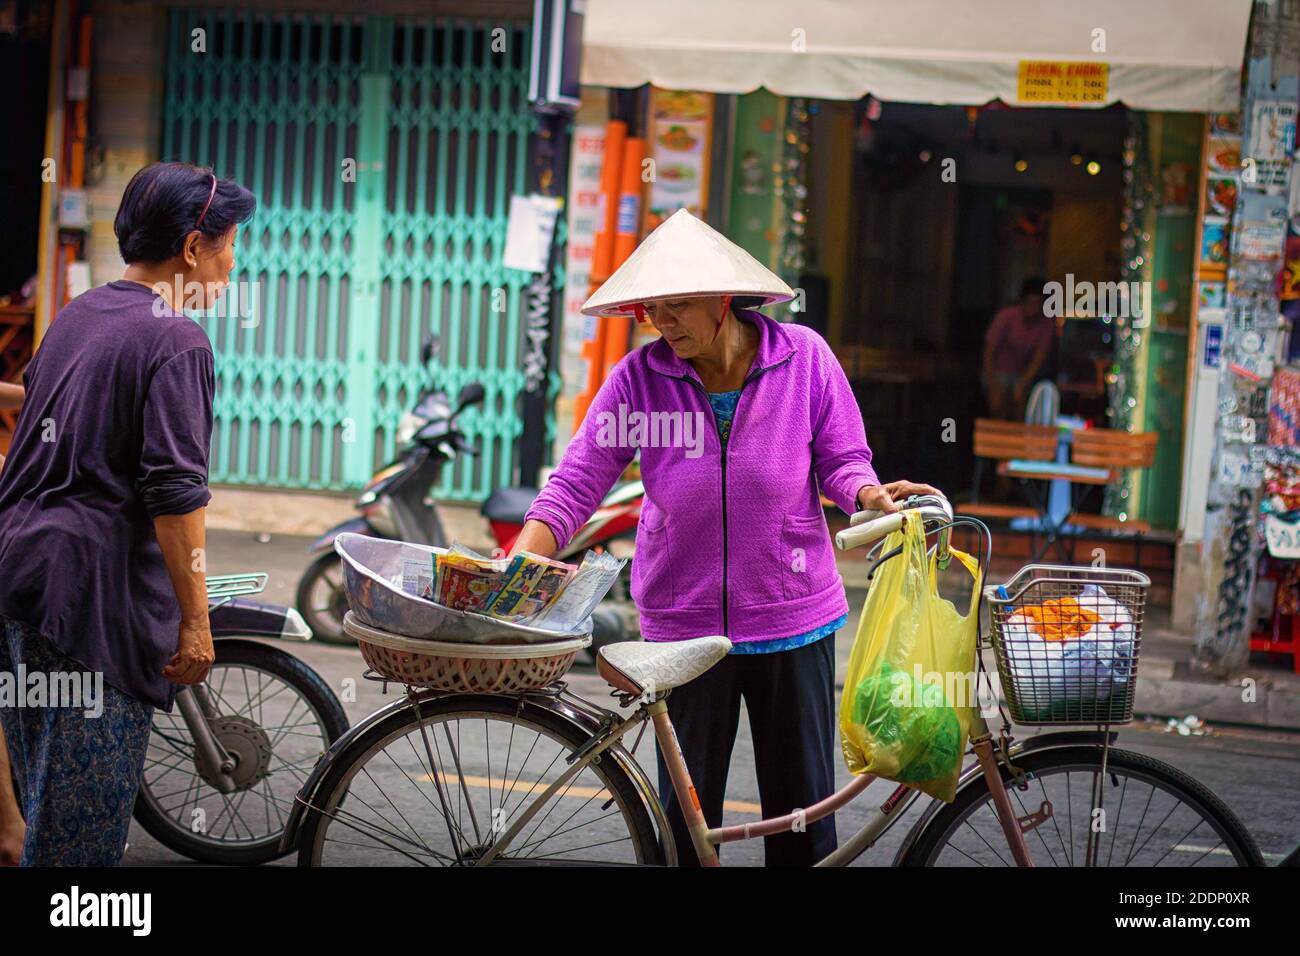 A woman on bike selling food stuffs. Stock Photo